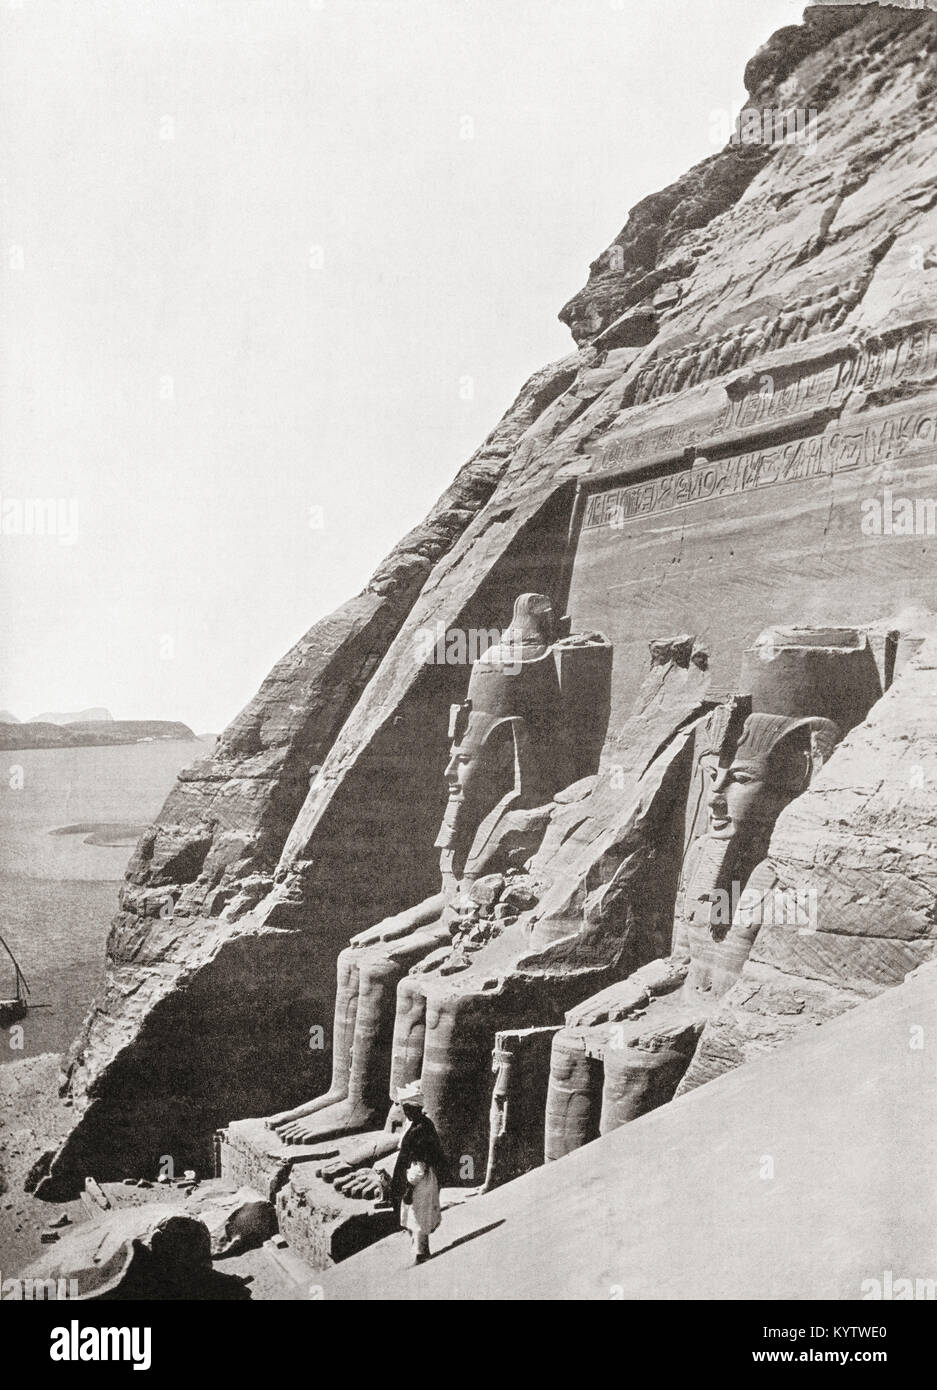 Die Tempeln von Abu Simbel, Nubien, Ägypten, hier c zu sehen 1920 vor Ihrem Umzug in 1968 auf einem künstlichen Hügel aus ein Kuppelbau, hoch über dem Assuan Staudamm Stausee. Von den Wundern der Welt, veröffentlicht C 1920. Stockfoto